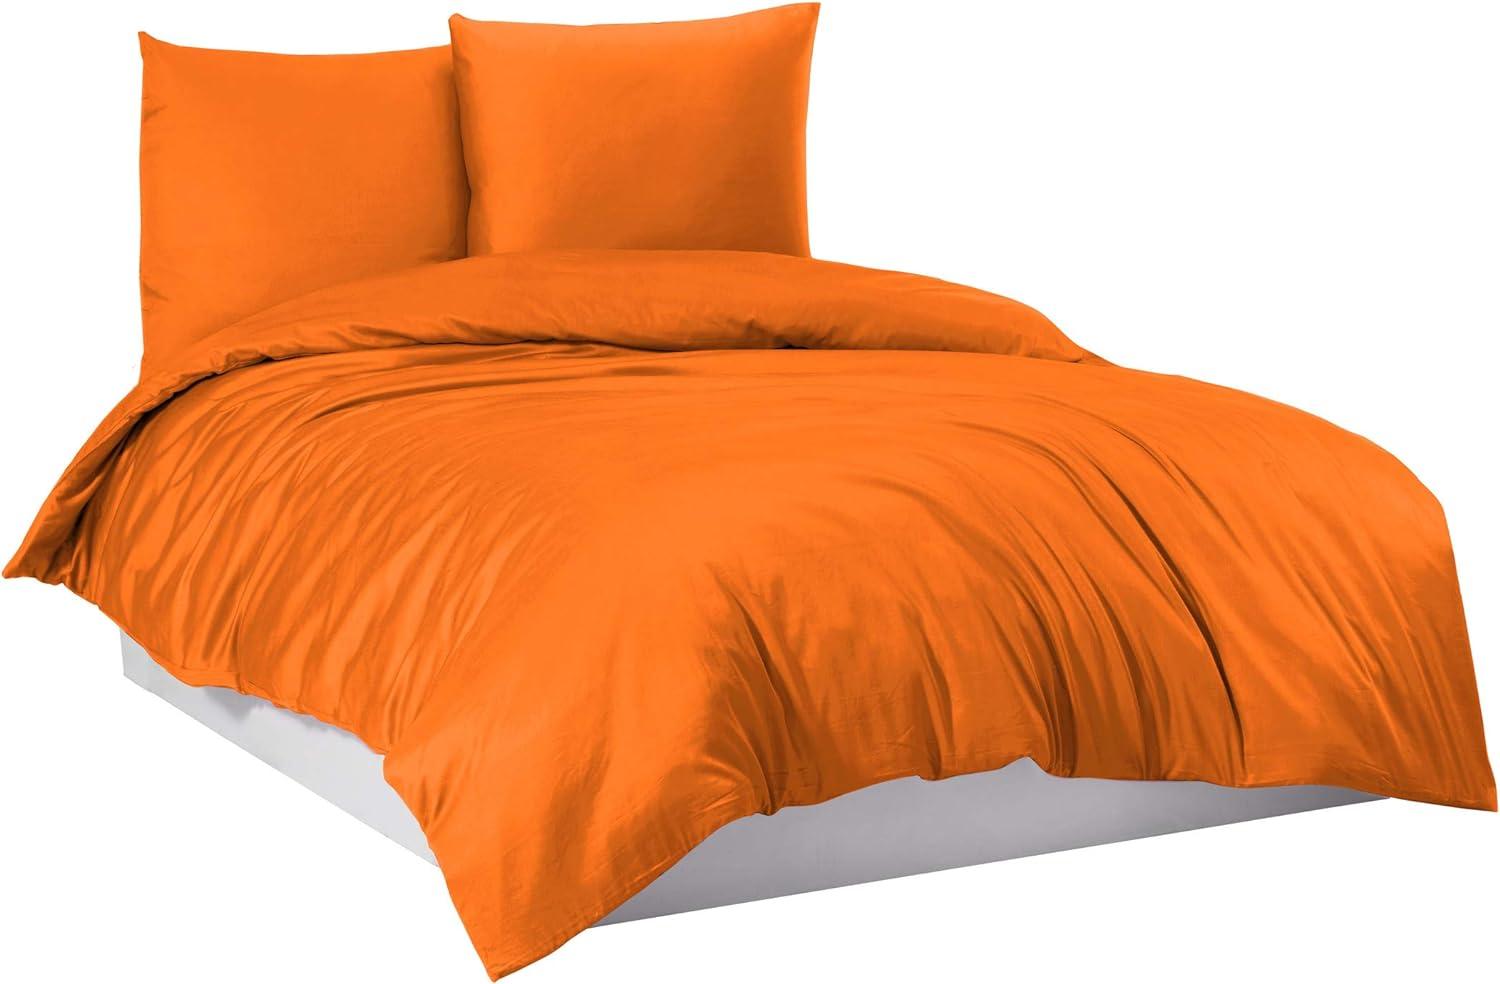 Mixibaby Bettwäsche Bettgarnitur Bettbezug 100% Baumwolle 135x200 155x220 200x220 200x200, Farbe:Orange, Größe:200 x 220 cm Bild 1